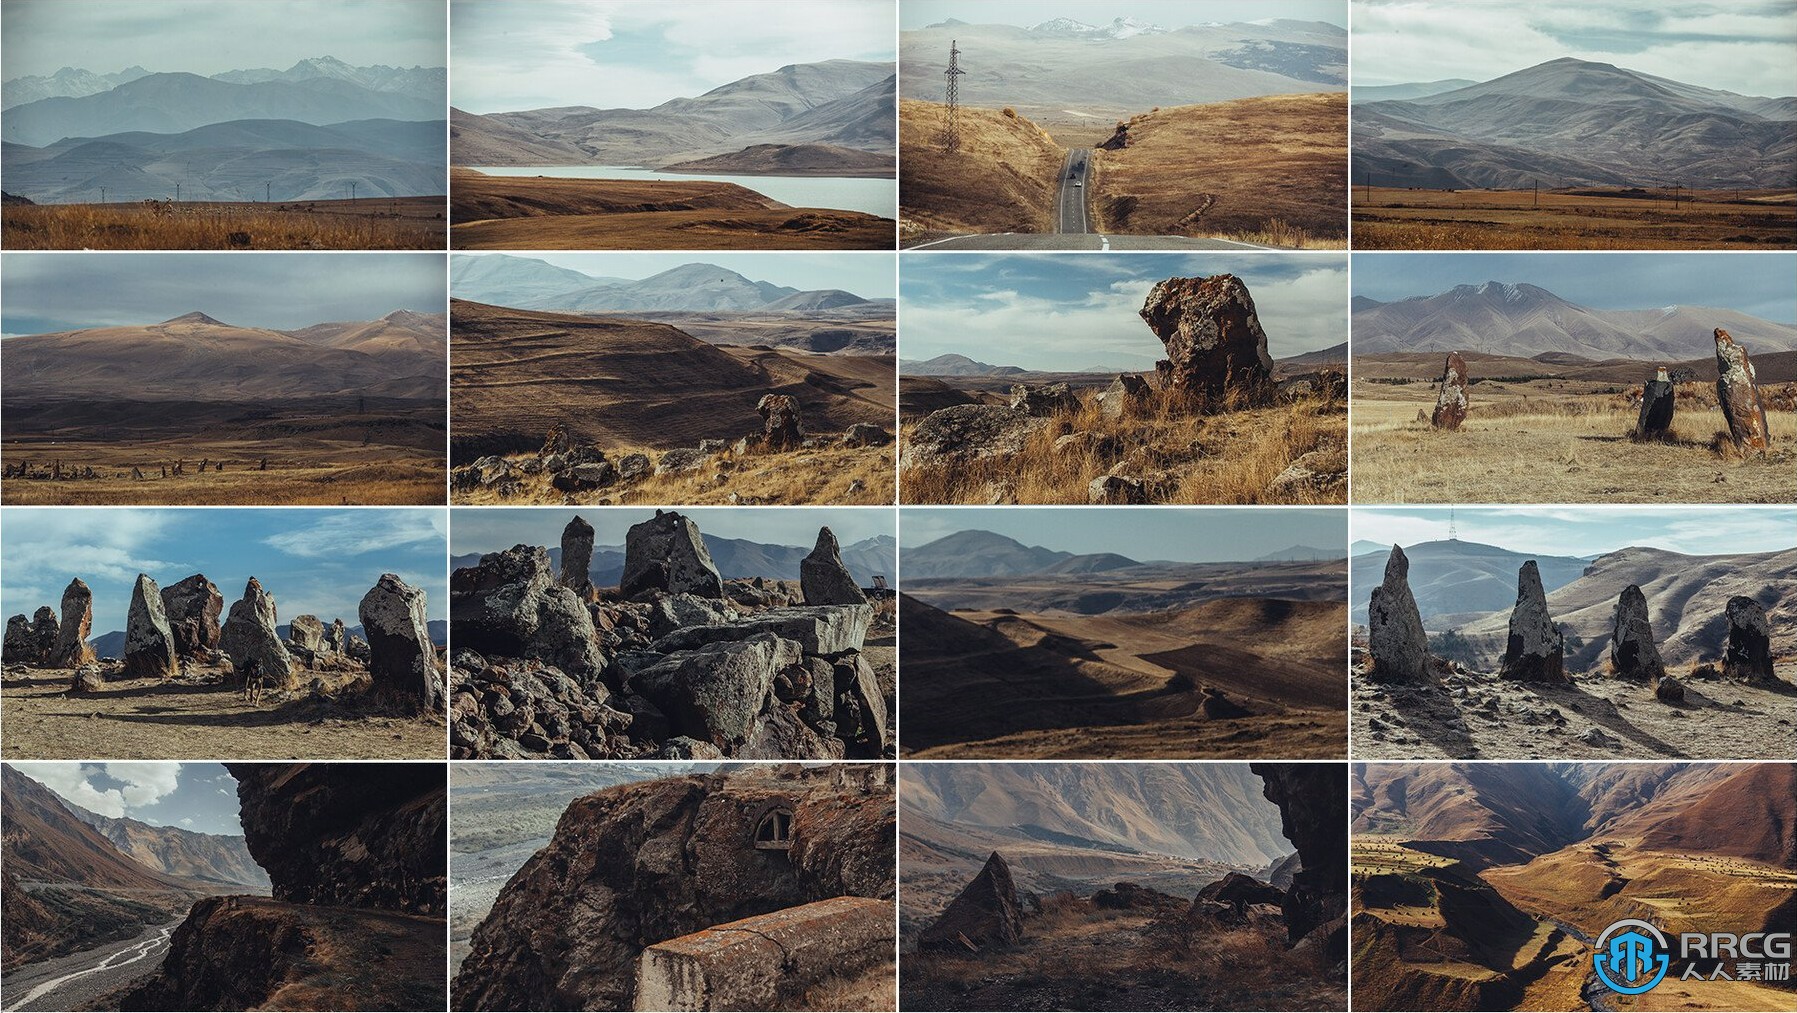 1000张岩石悬崖山地景观地形高清参考图合集